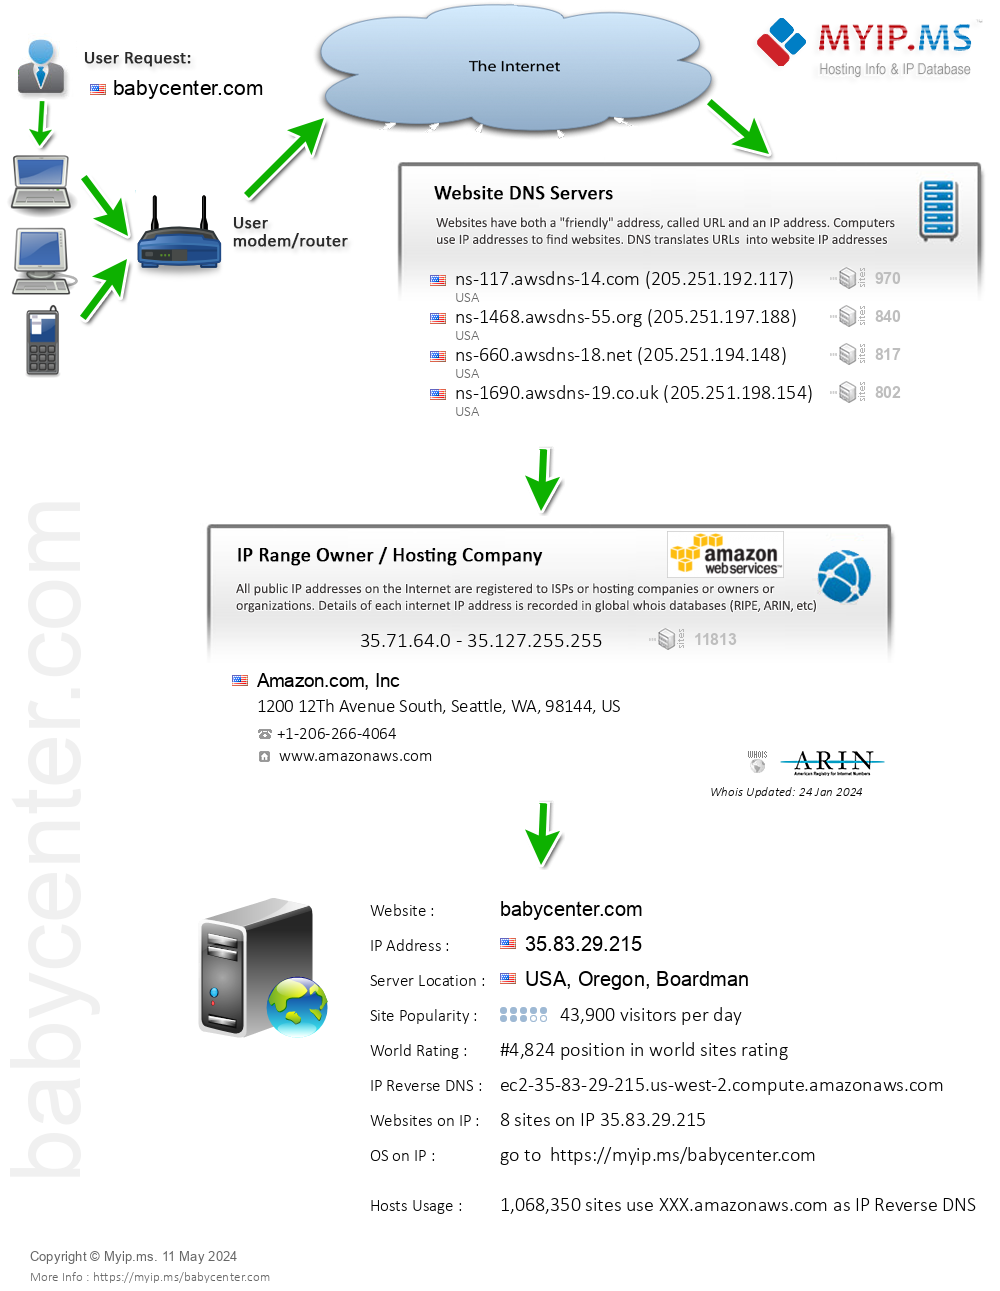 Babycenter.com - Website Hosting Visual IP Diagram